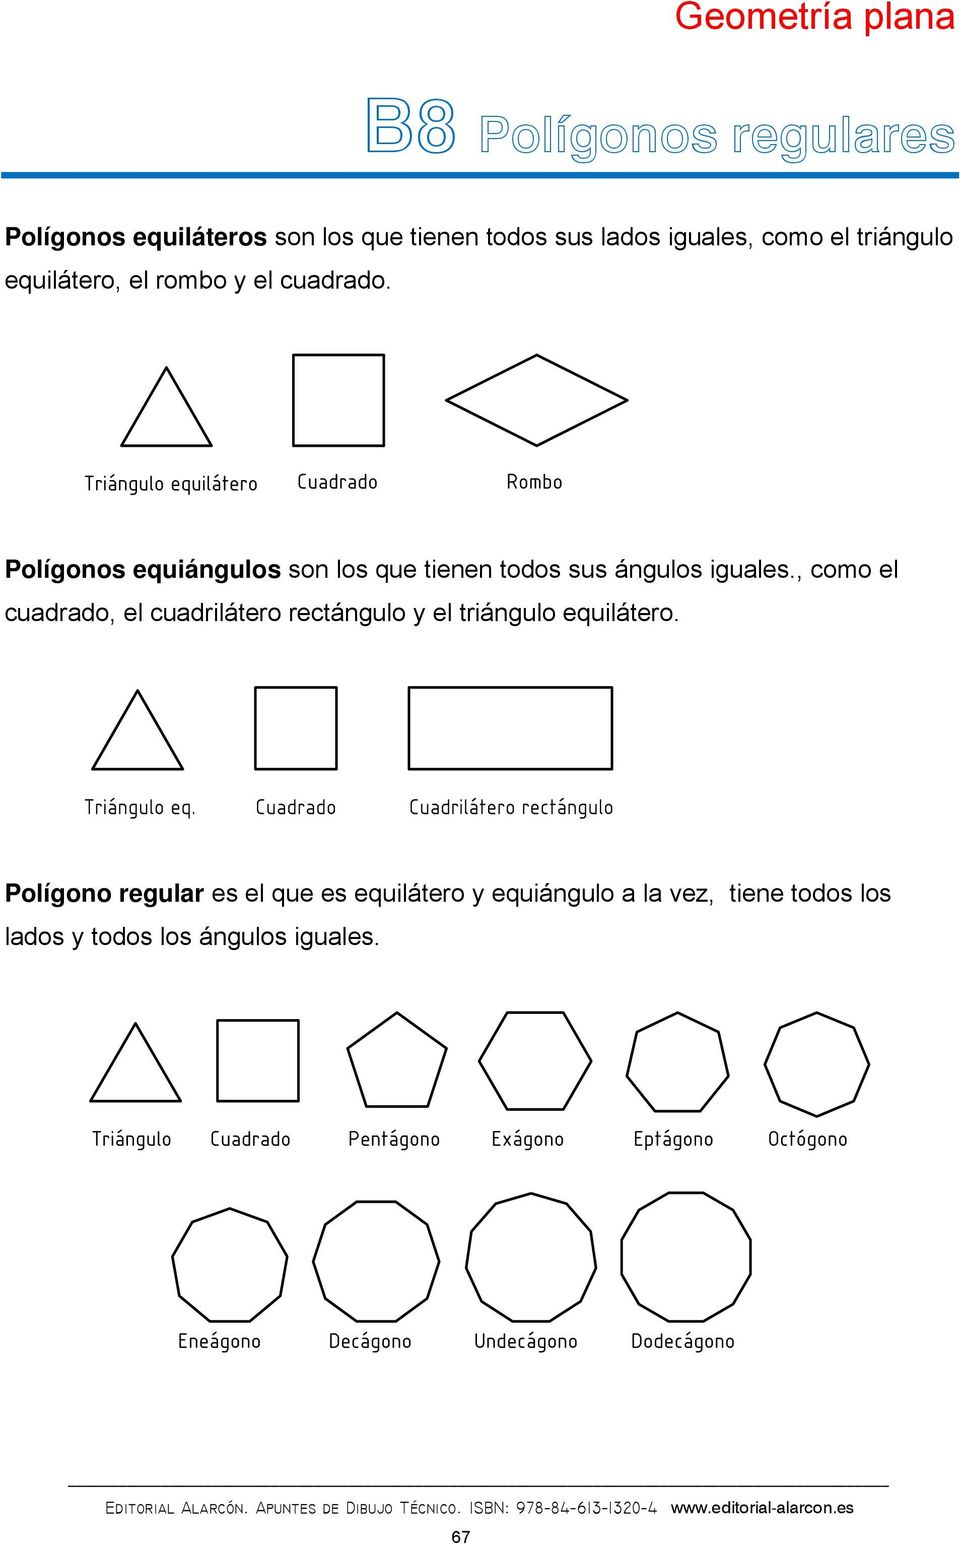 Polígonos equiángulos son los que tienen todos sus ángulos iguales.